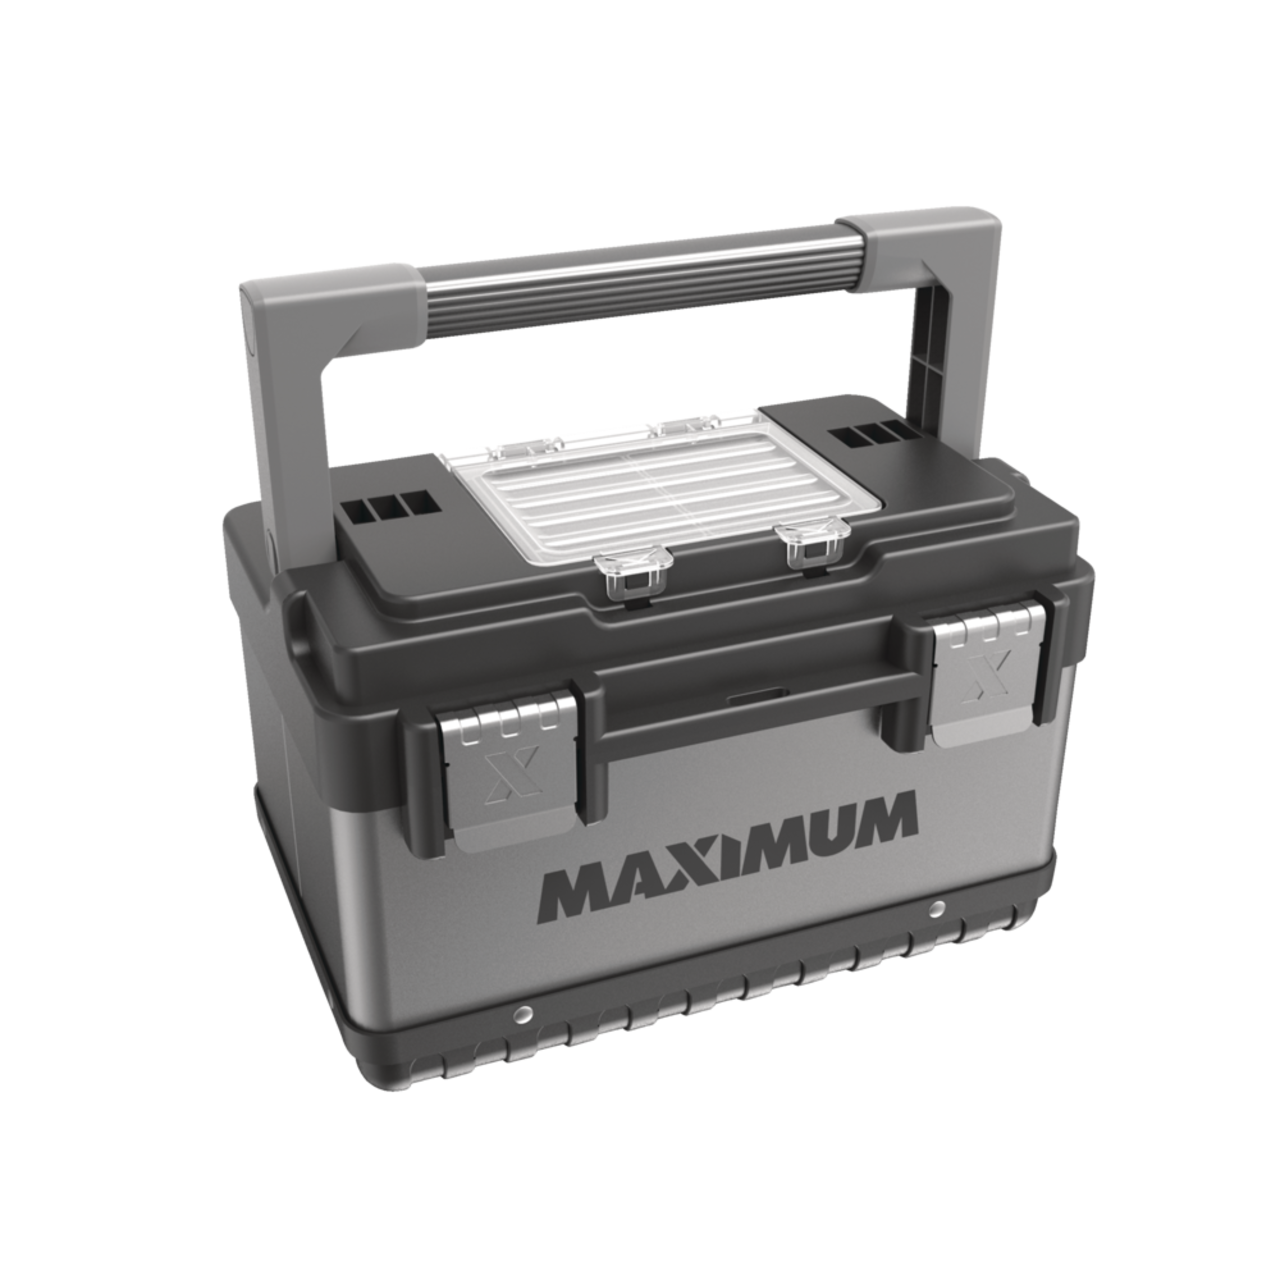 MAXIMUM Portable Plastic & Metal Tool Box w/ Removable Tray